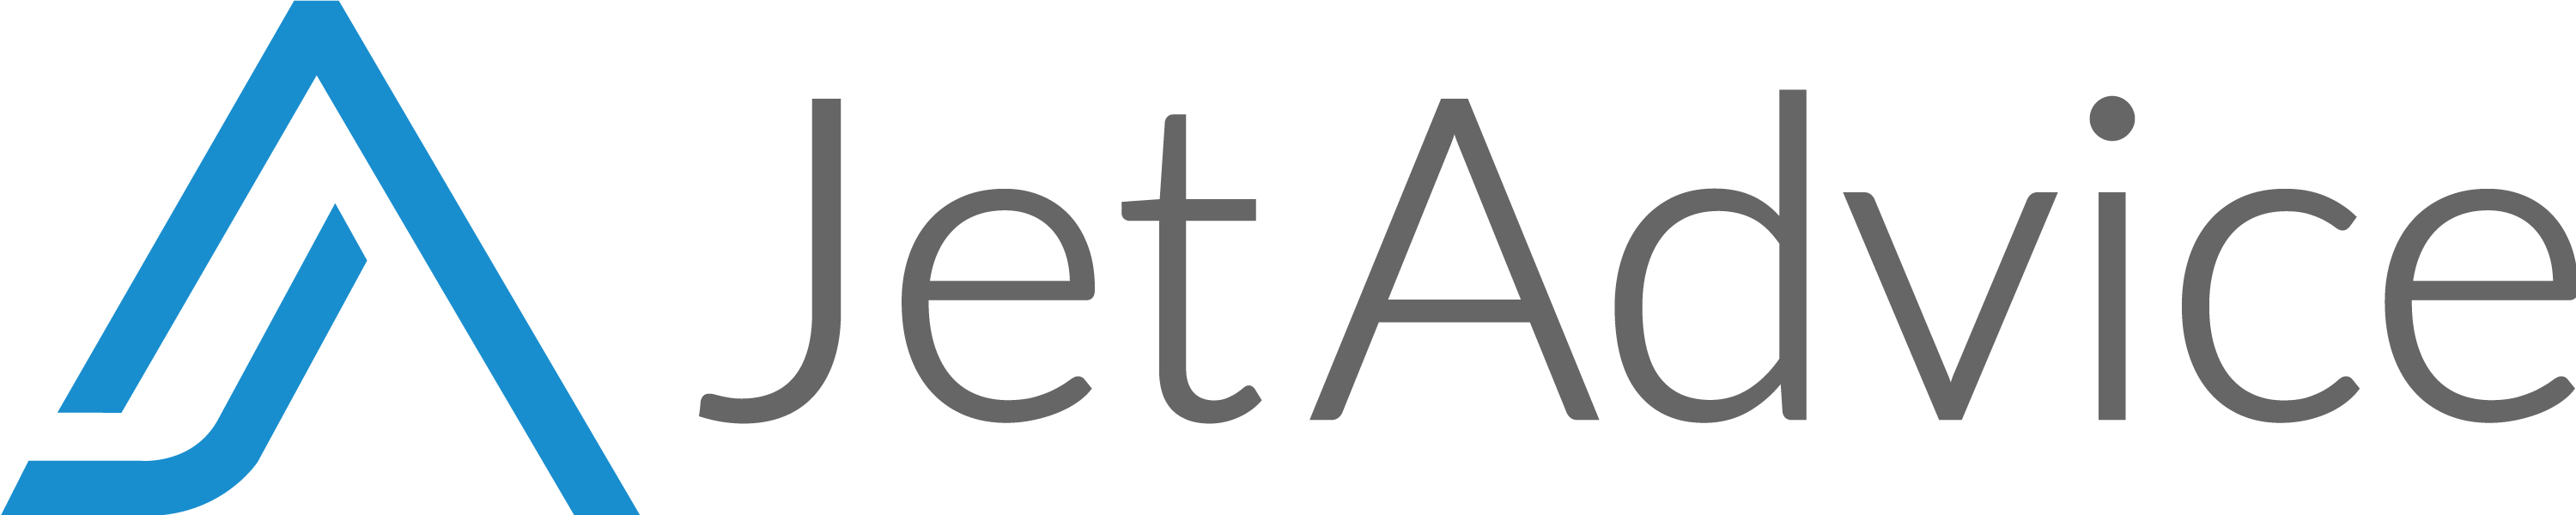 Jet-advice-audit-logo